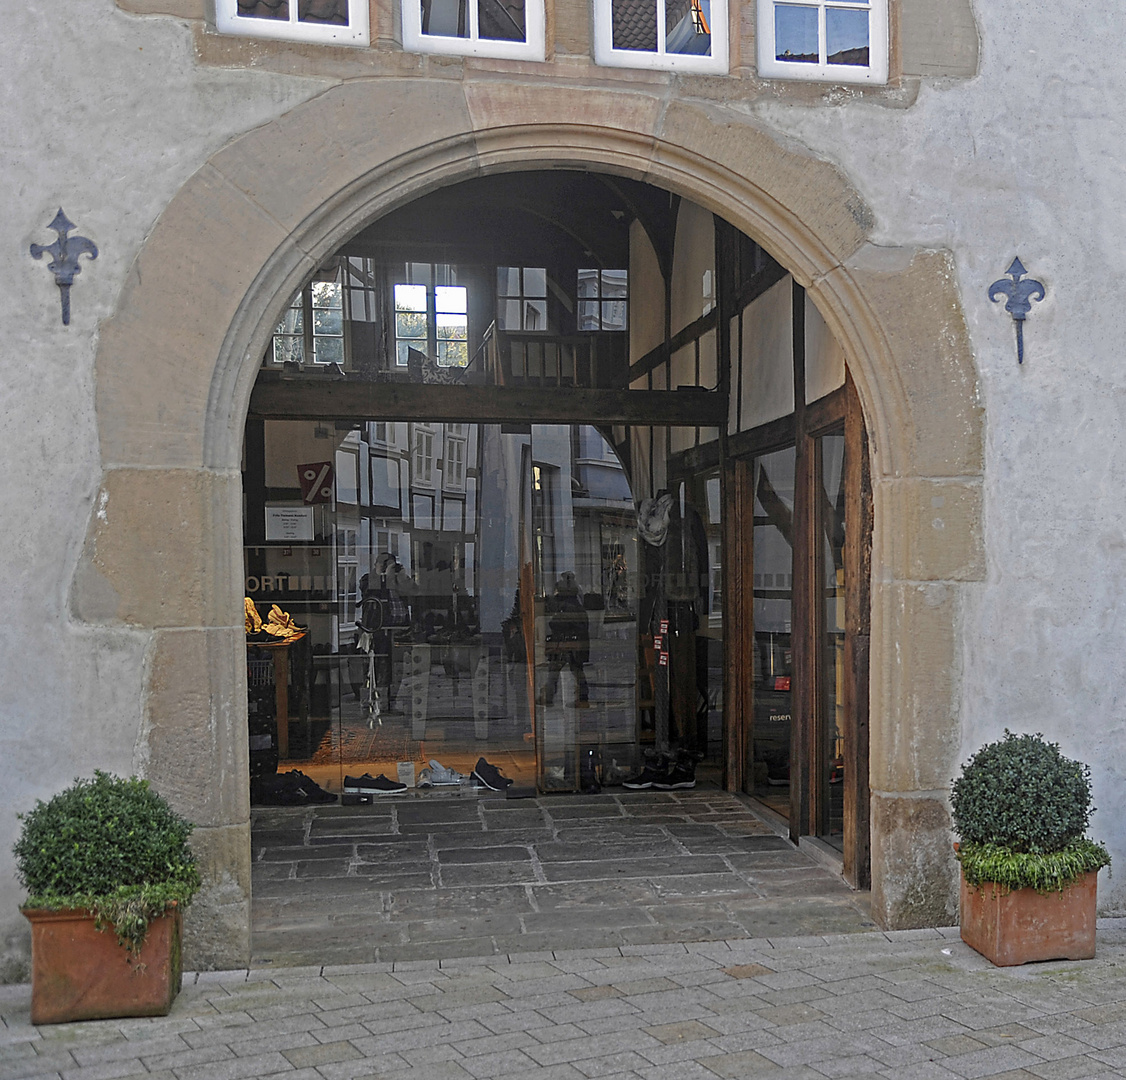 Spiegelung im Torbogen in der Altstadt von Bad Salzuflen.